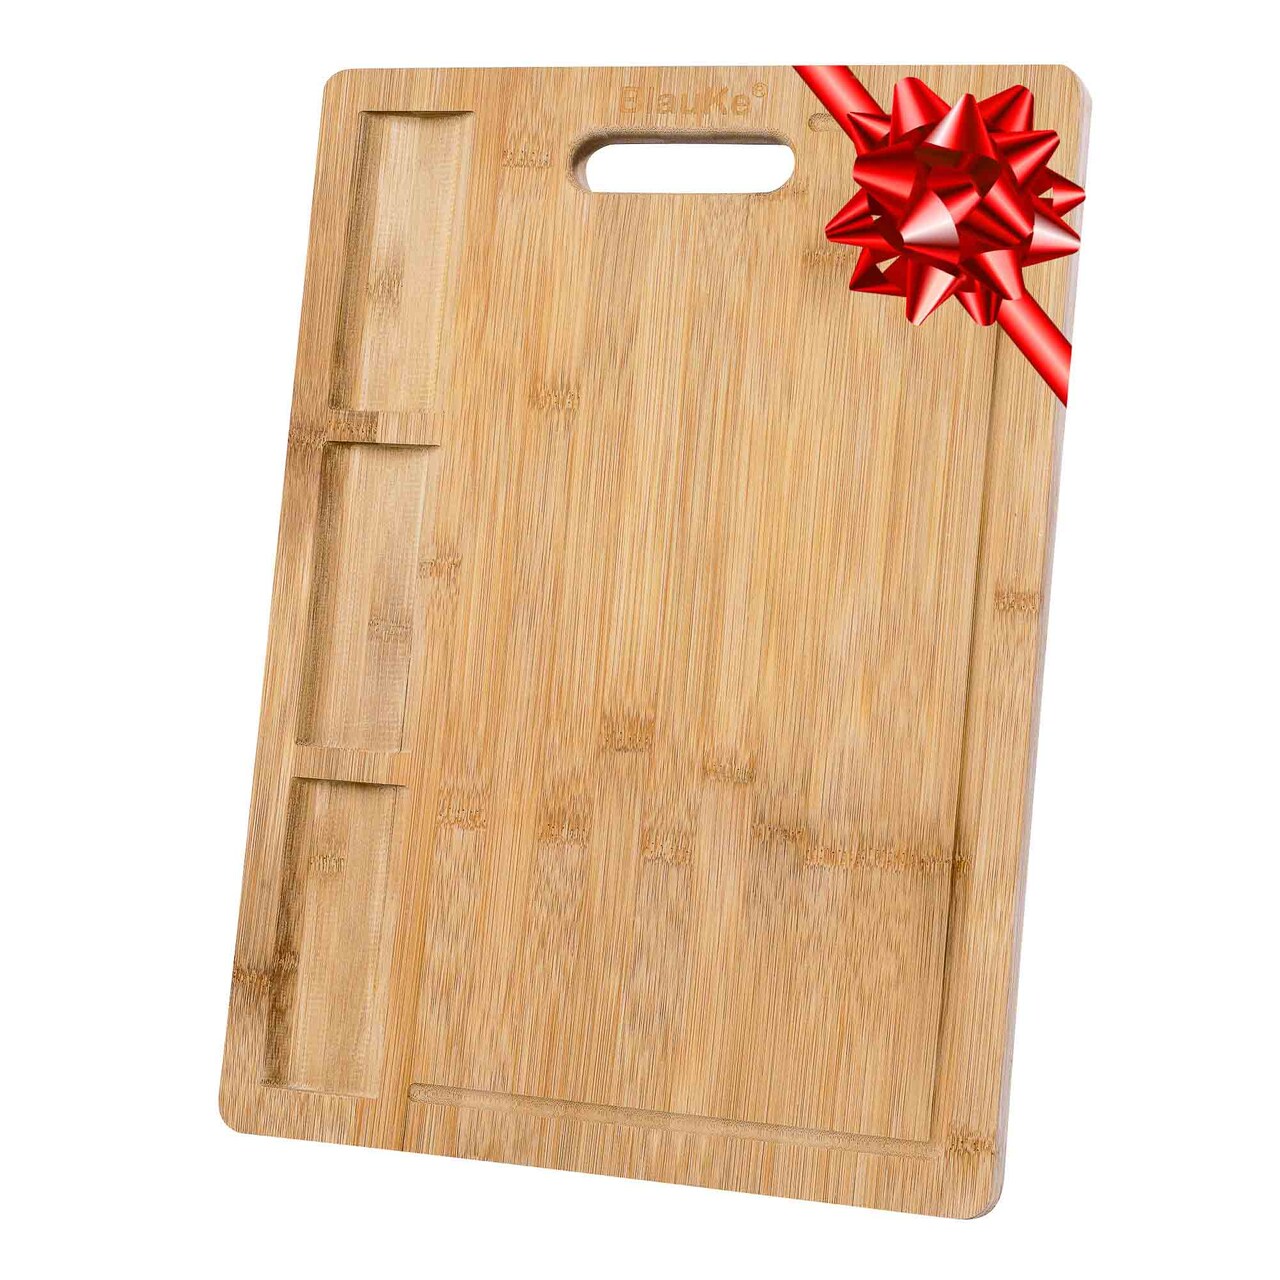 Extra Large Bamboo Cutting Board - 17x12.5 inch Wood Cutting Board